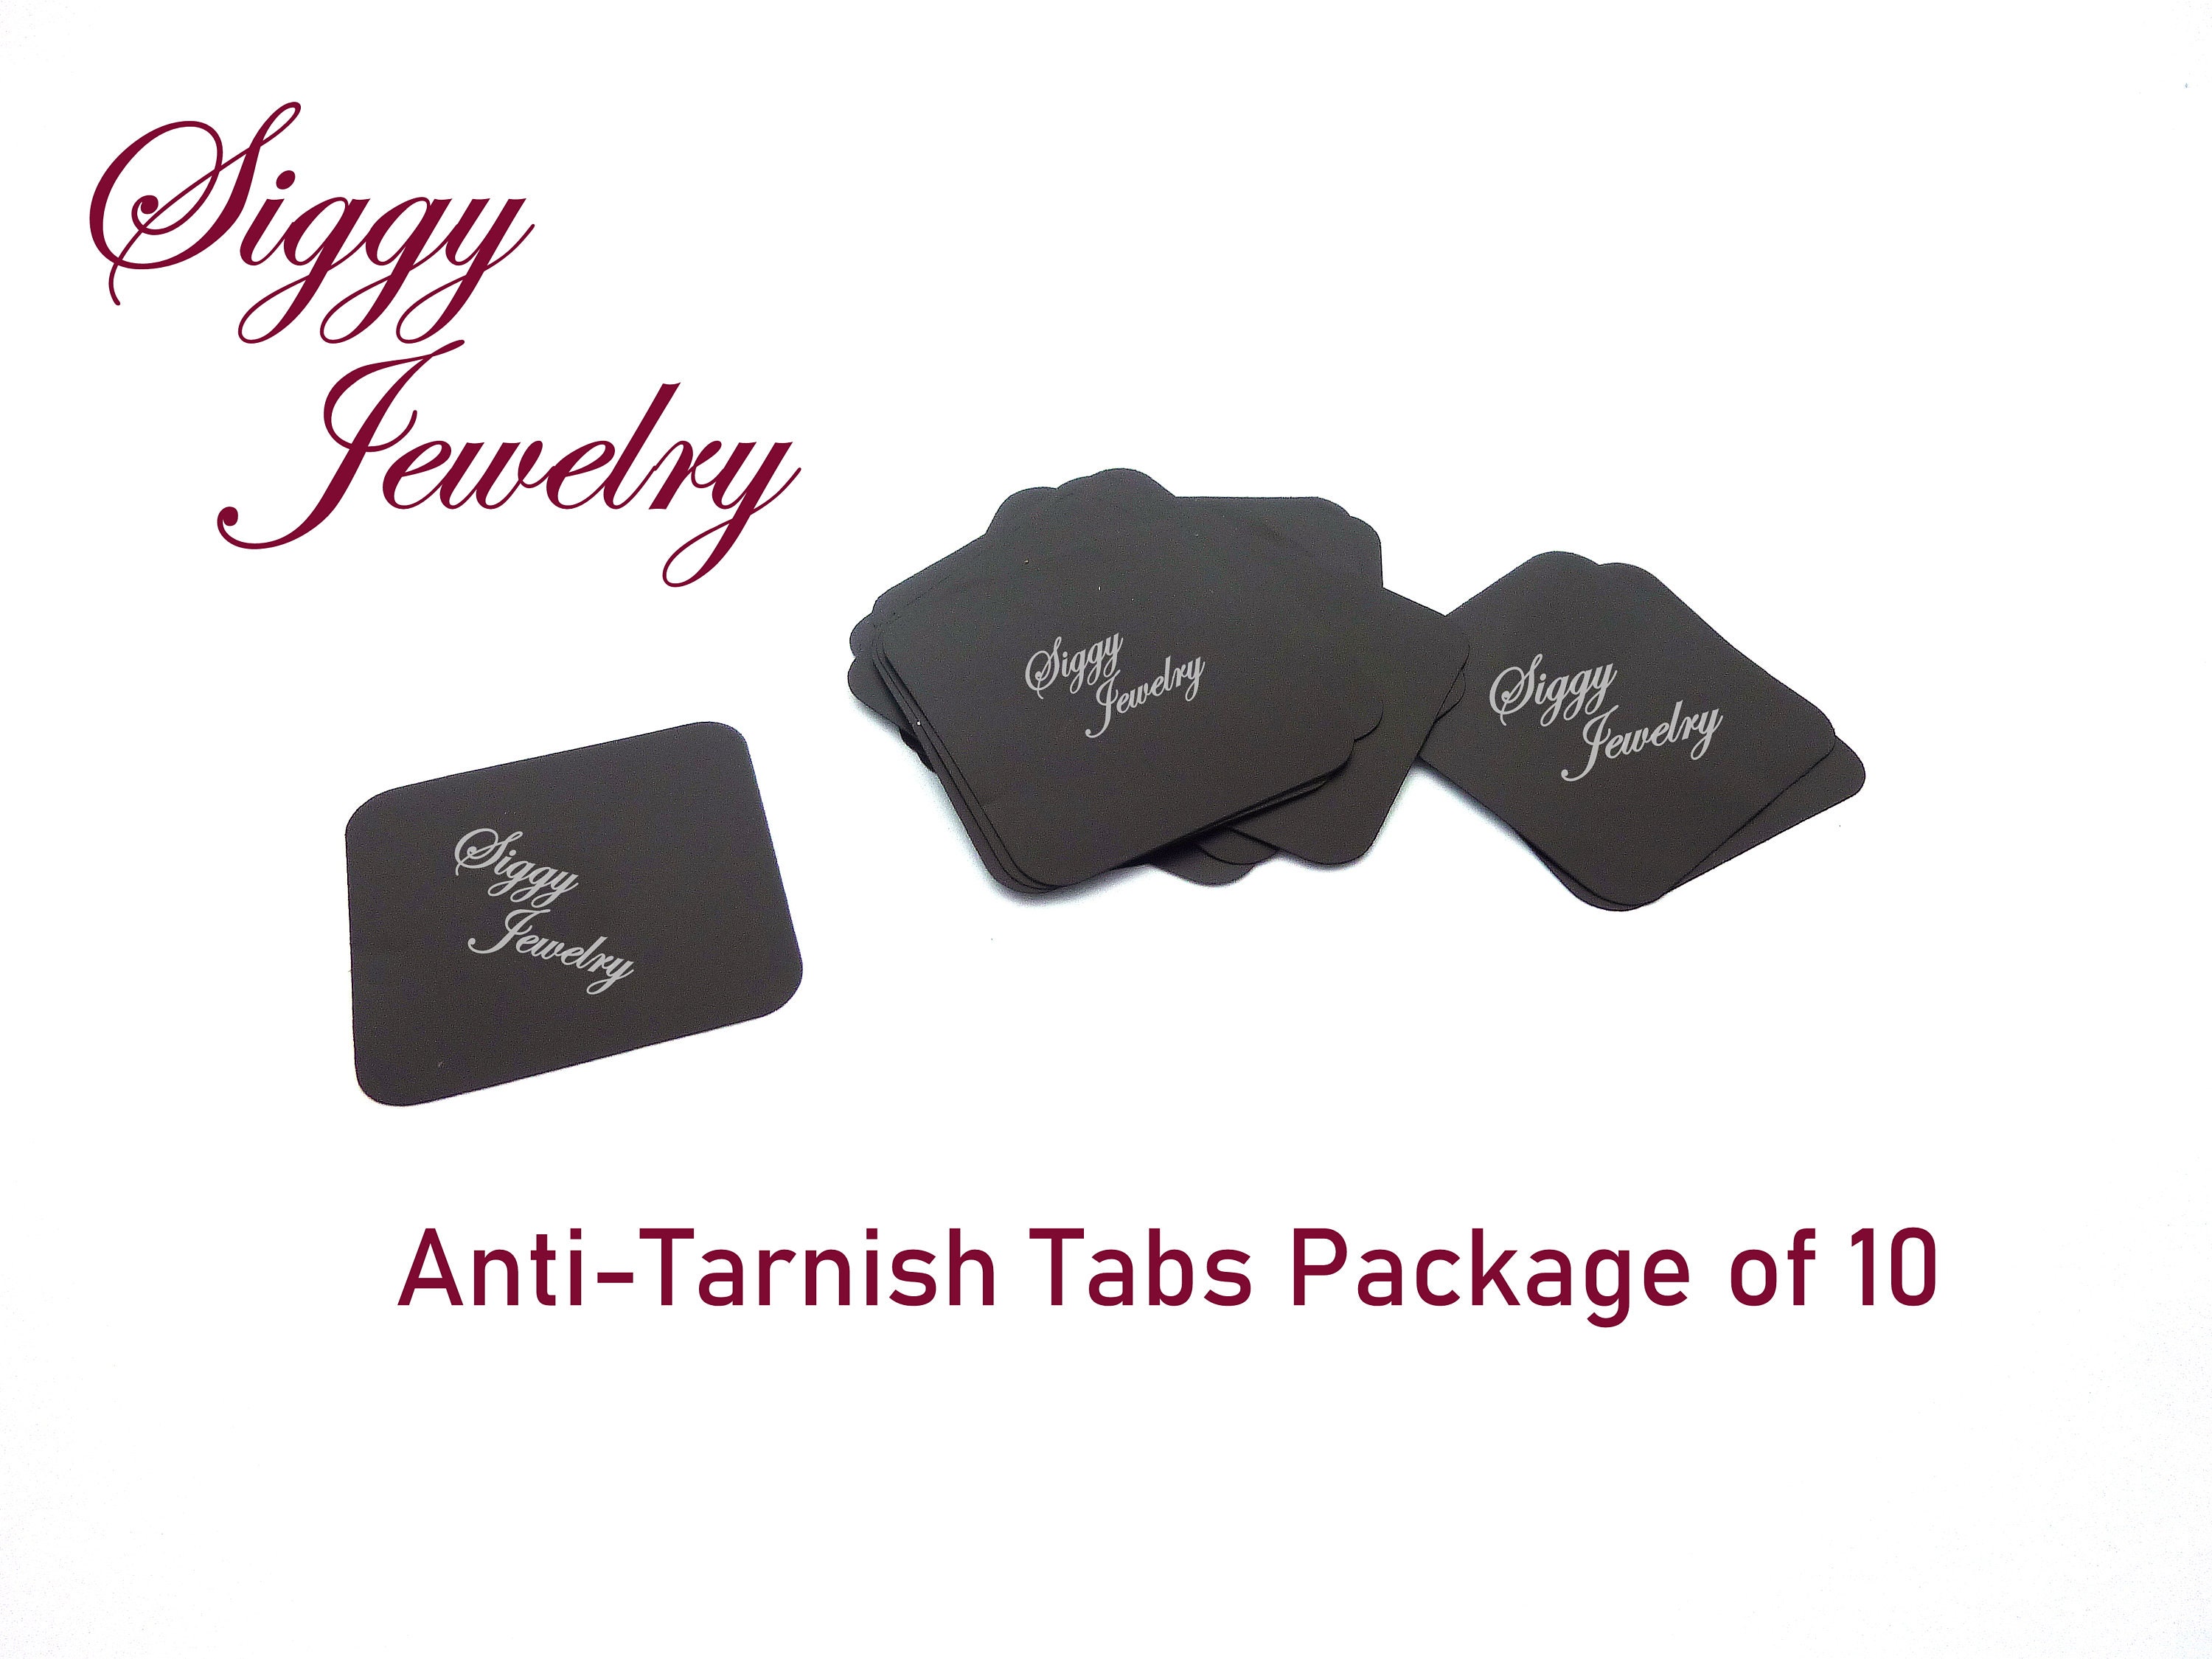  Premium Silver Jewelry Tarnish Prevention Bags Anti